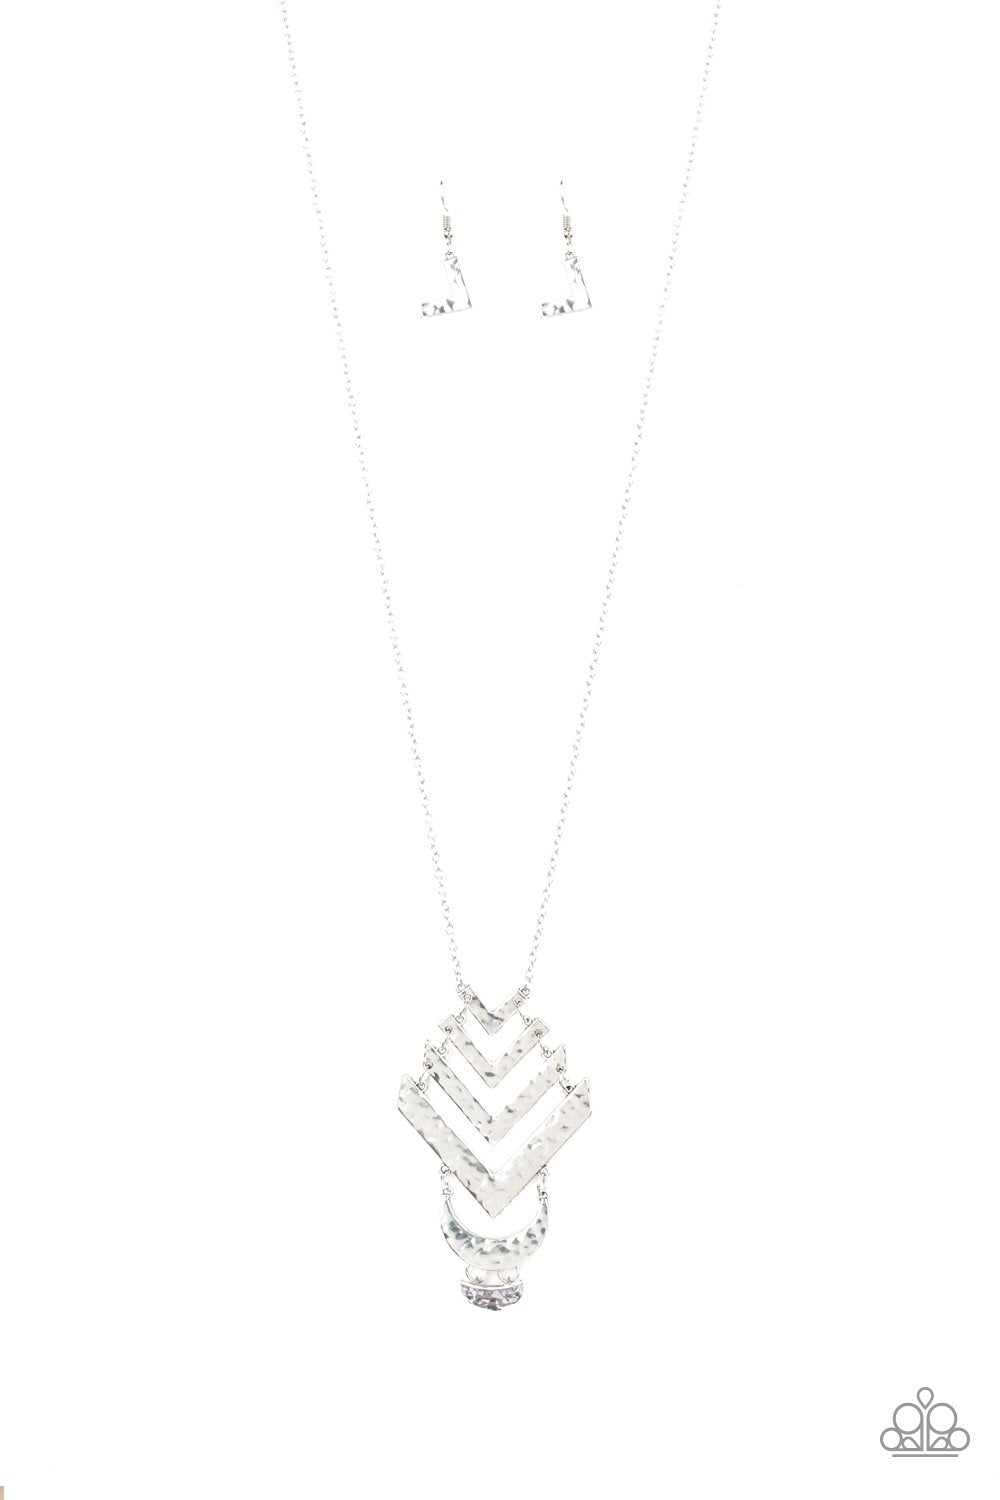 Artisan Edge - Silver Necklace